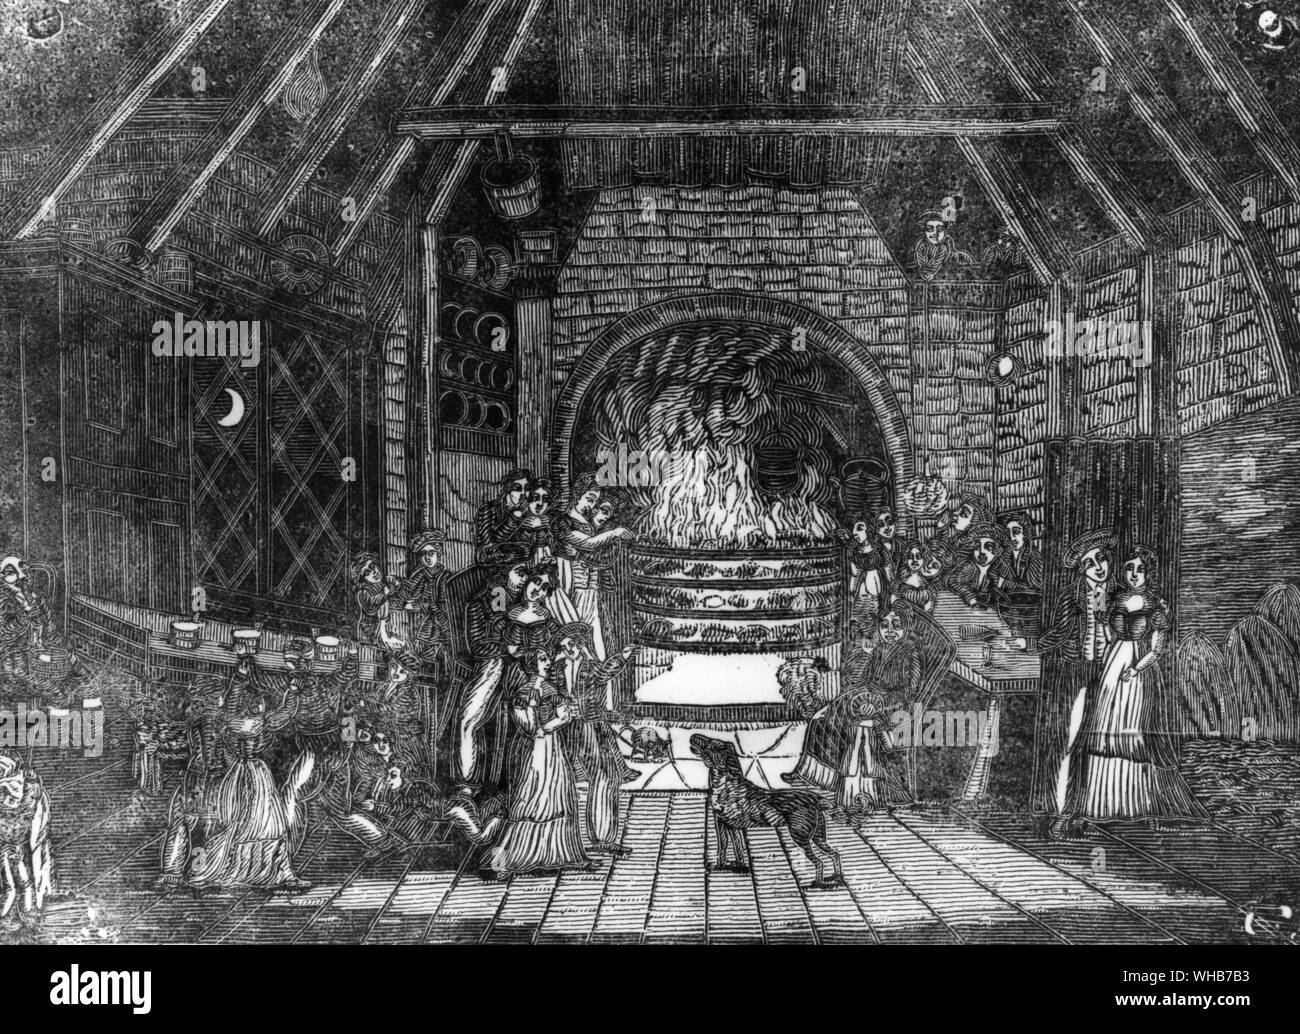 Halloween gente sentada alrededor de un fuego. Mientras las hadas son seres humanos en el extranjero permanezca adentro alrededor del fuego. diario de 1795 Burns' publicación Foto de stock